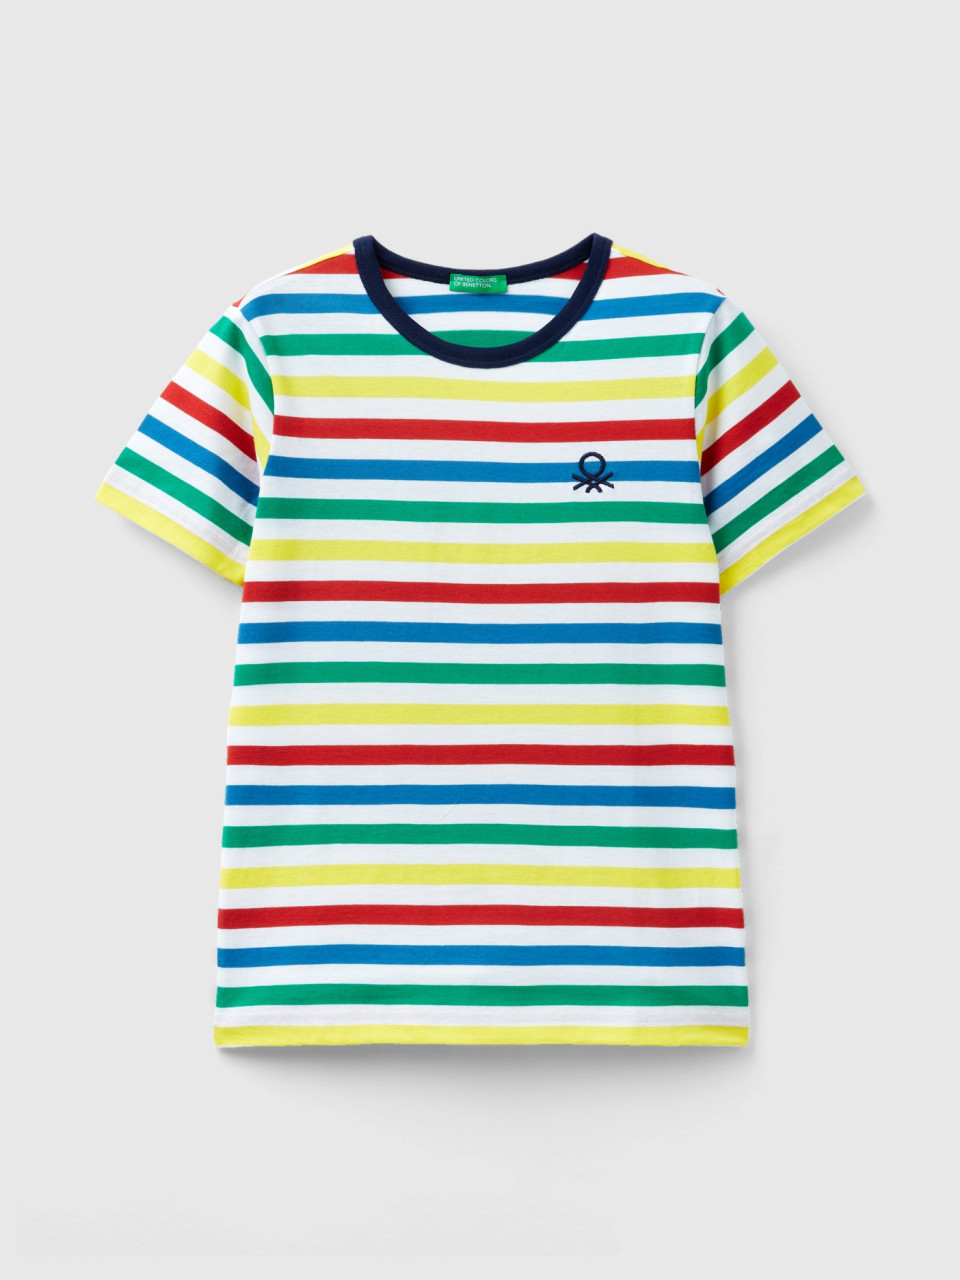 Benetton, Striped 100% Cotton T-shirt, Multi-color, Kids